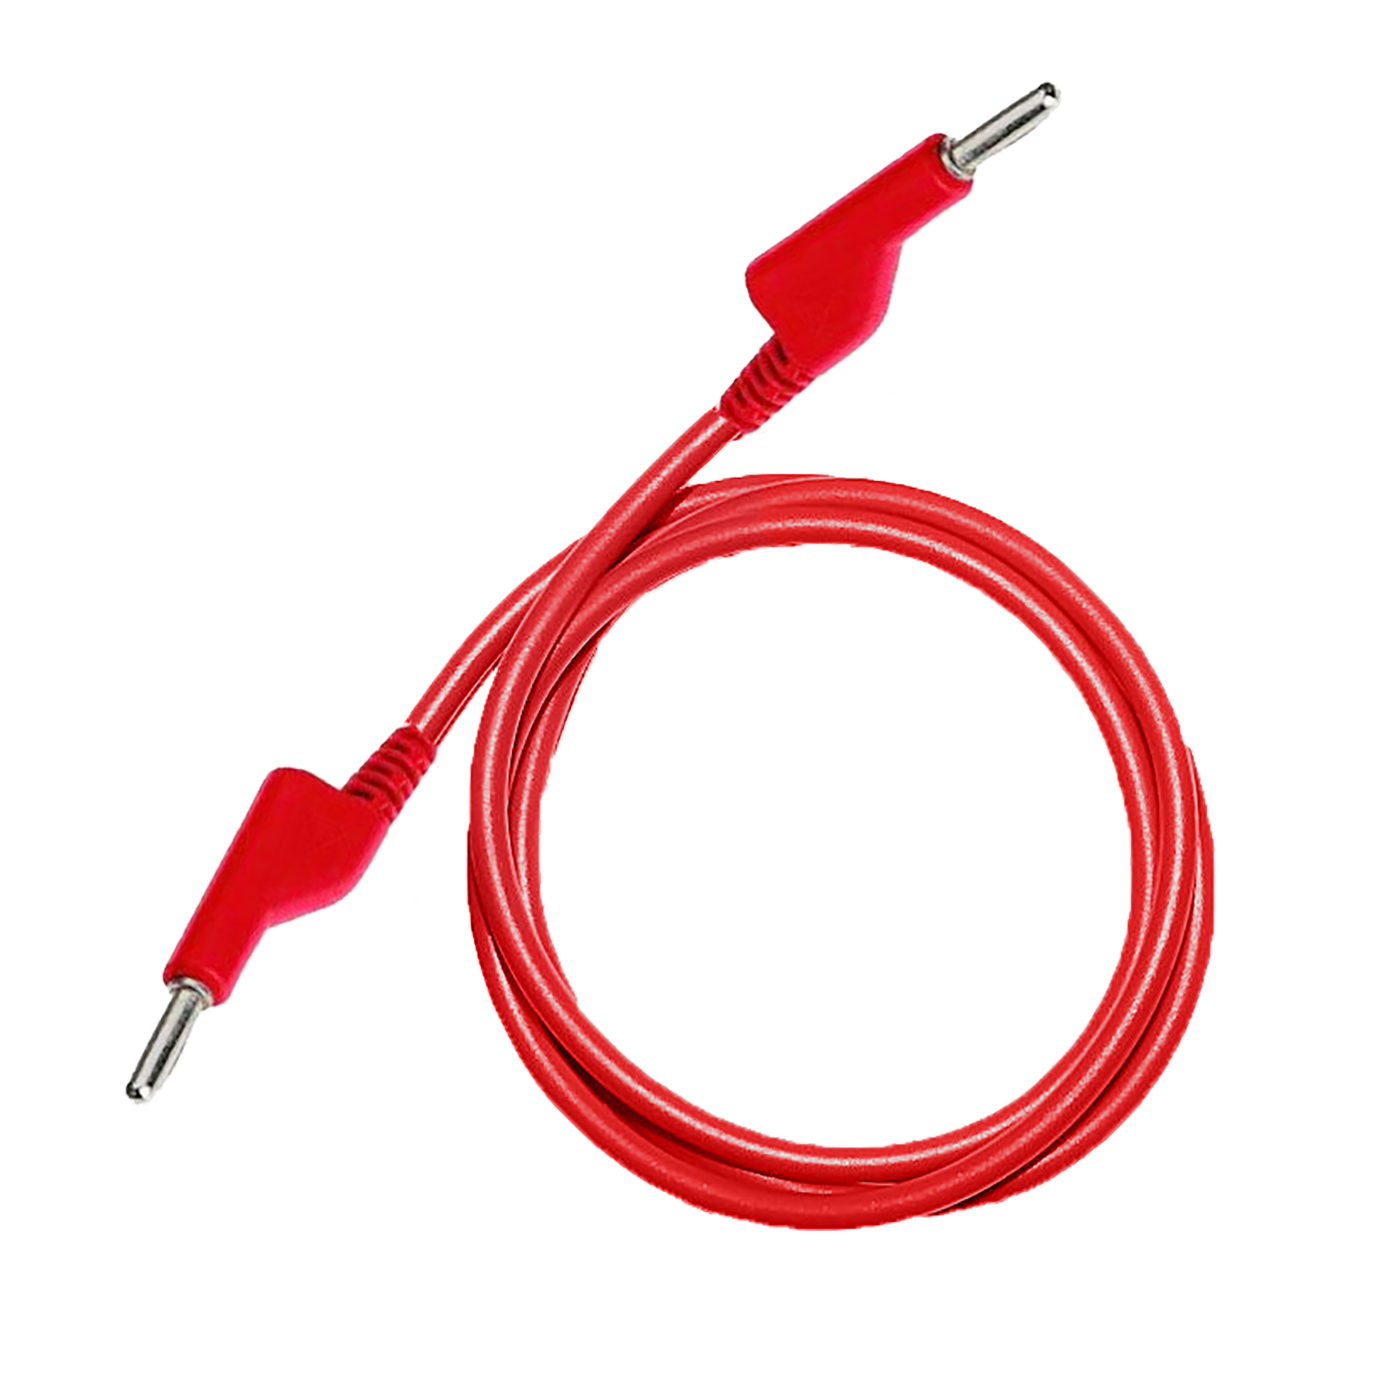 Testovací / laboratorní kabel Ø4 mm Barva: Červená, Model: Banánek-banánek, Rozměr: 50 cm